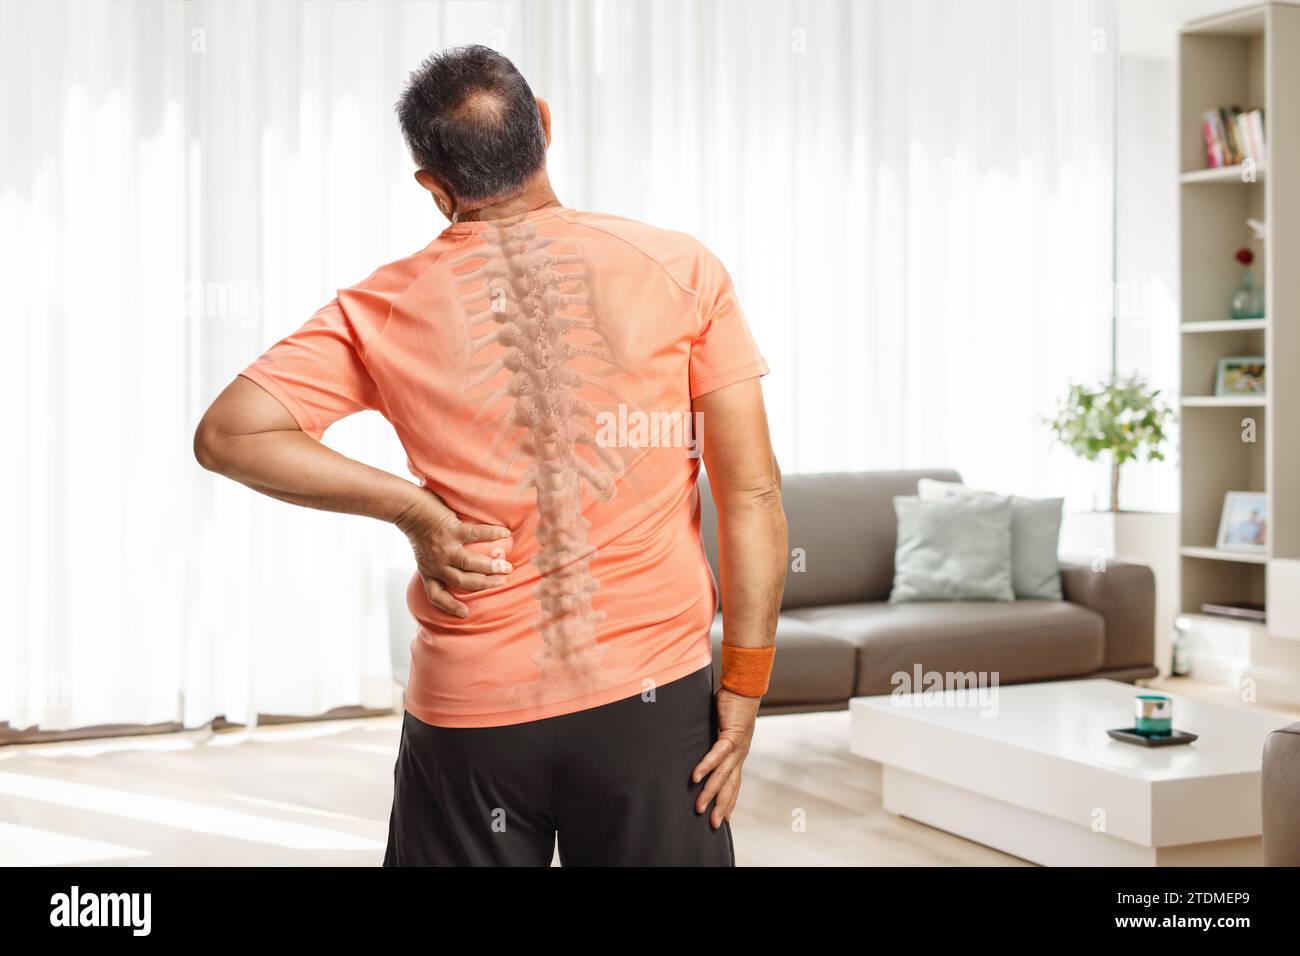 Rückansicht eines Mannes, der seinen schmerzhaften Rücken in einem Wohnzimmer mit sichtbarer Wirbelsäule hält Stockfoto